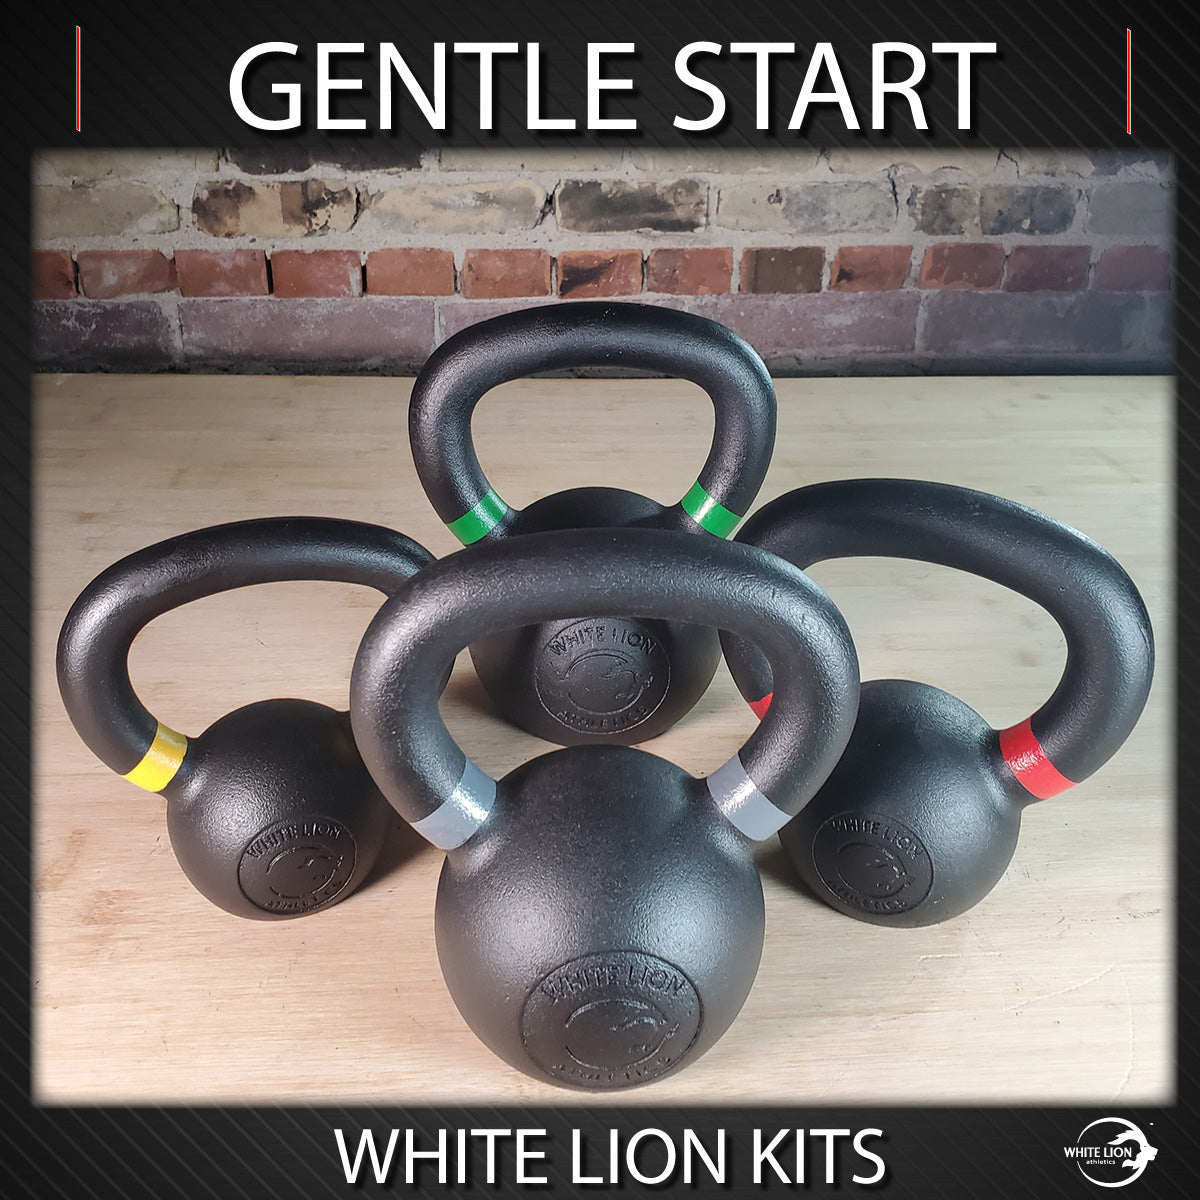 Kettlebell Package: "Gentle Start" (4kg,6kg,8kg, 12kg) | In Stock Now - White Lion Athletics